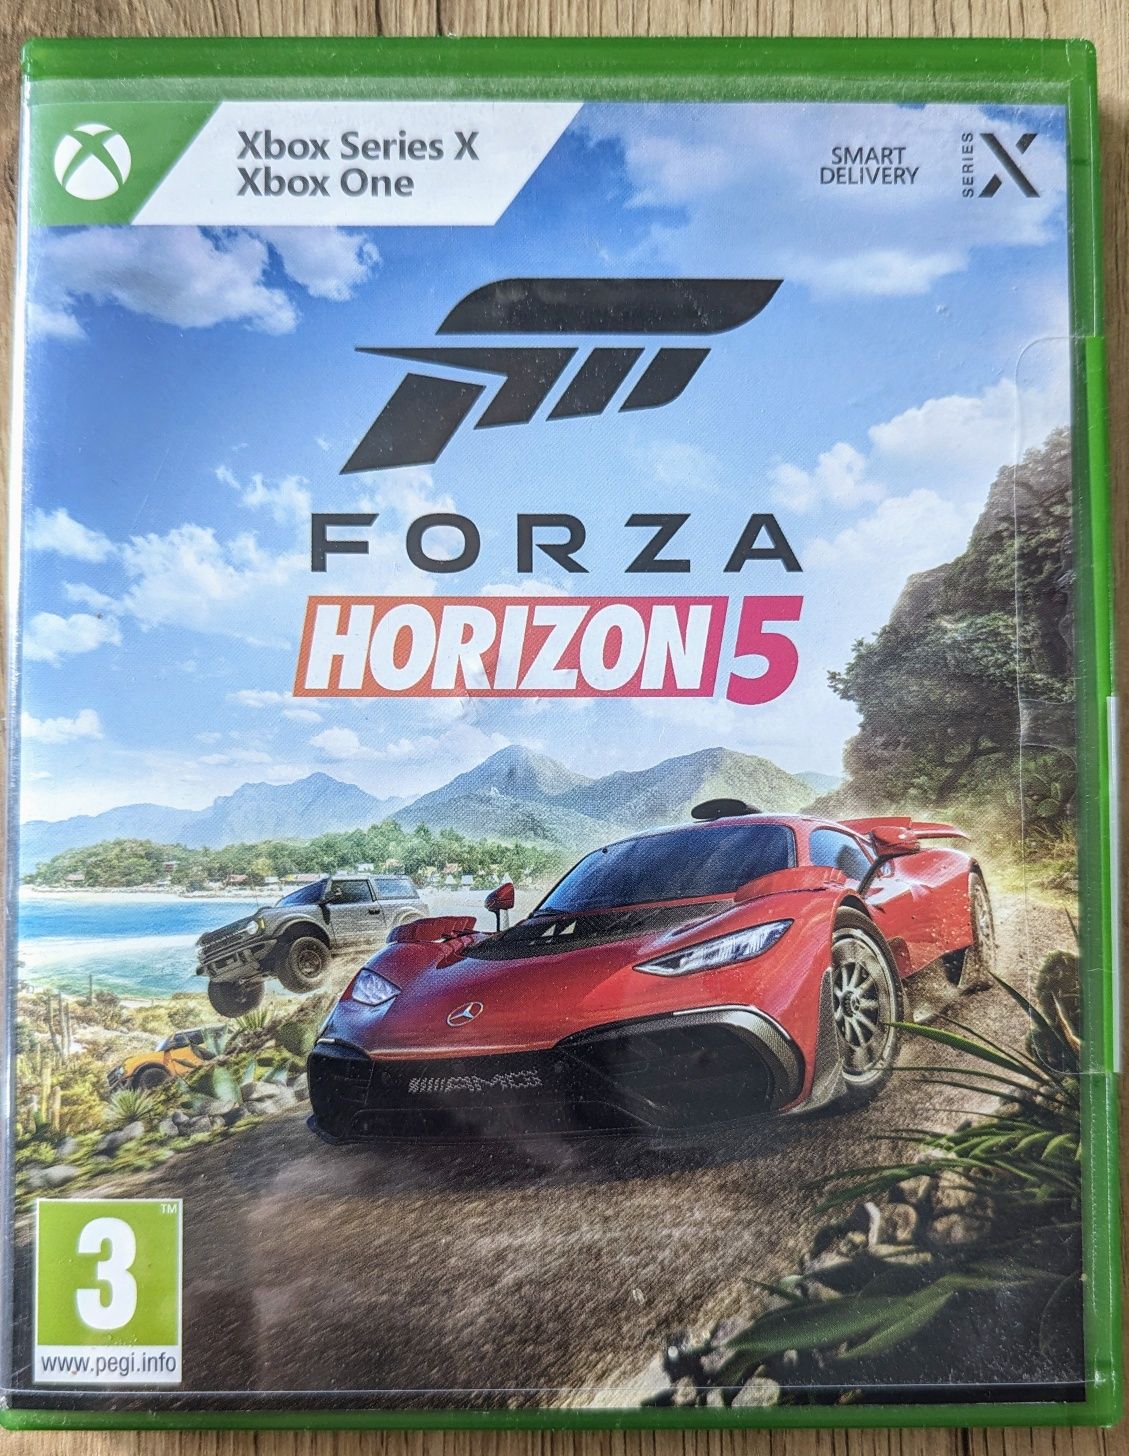 Forza Horizon 5 - Microsoft Xbox One / Xbos Seies S